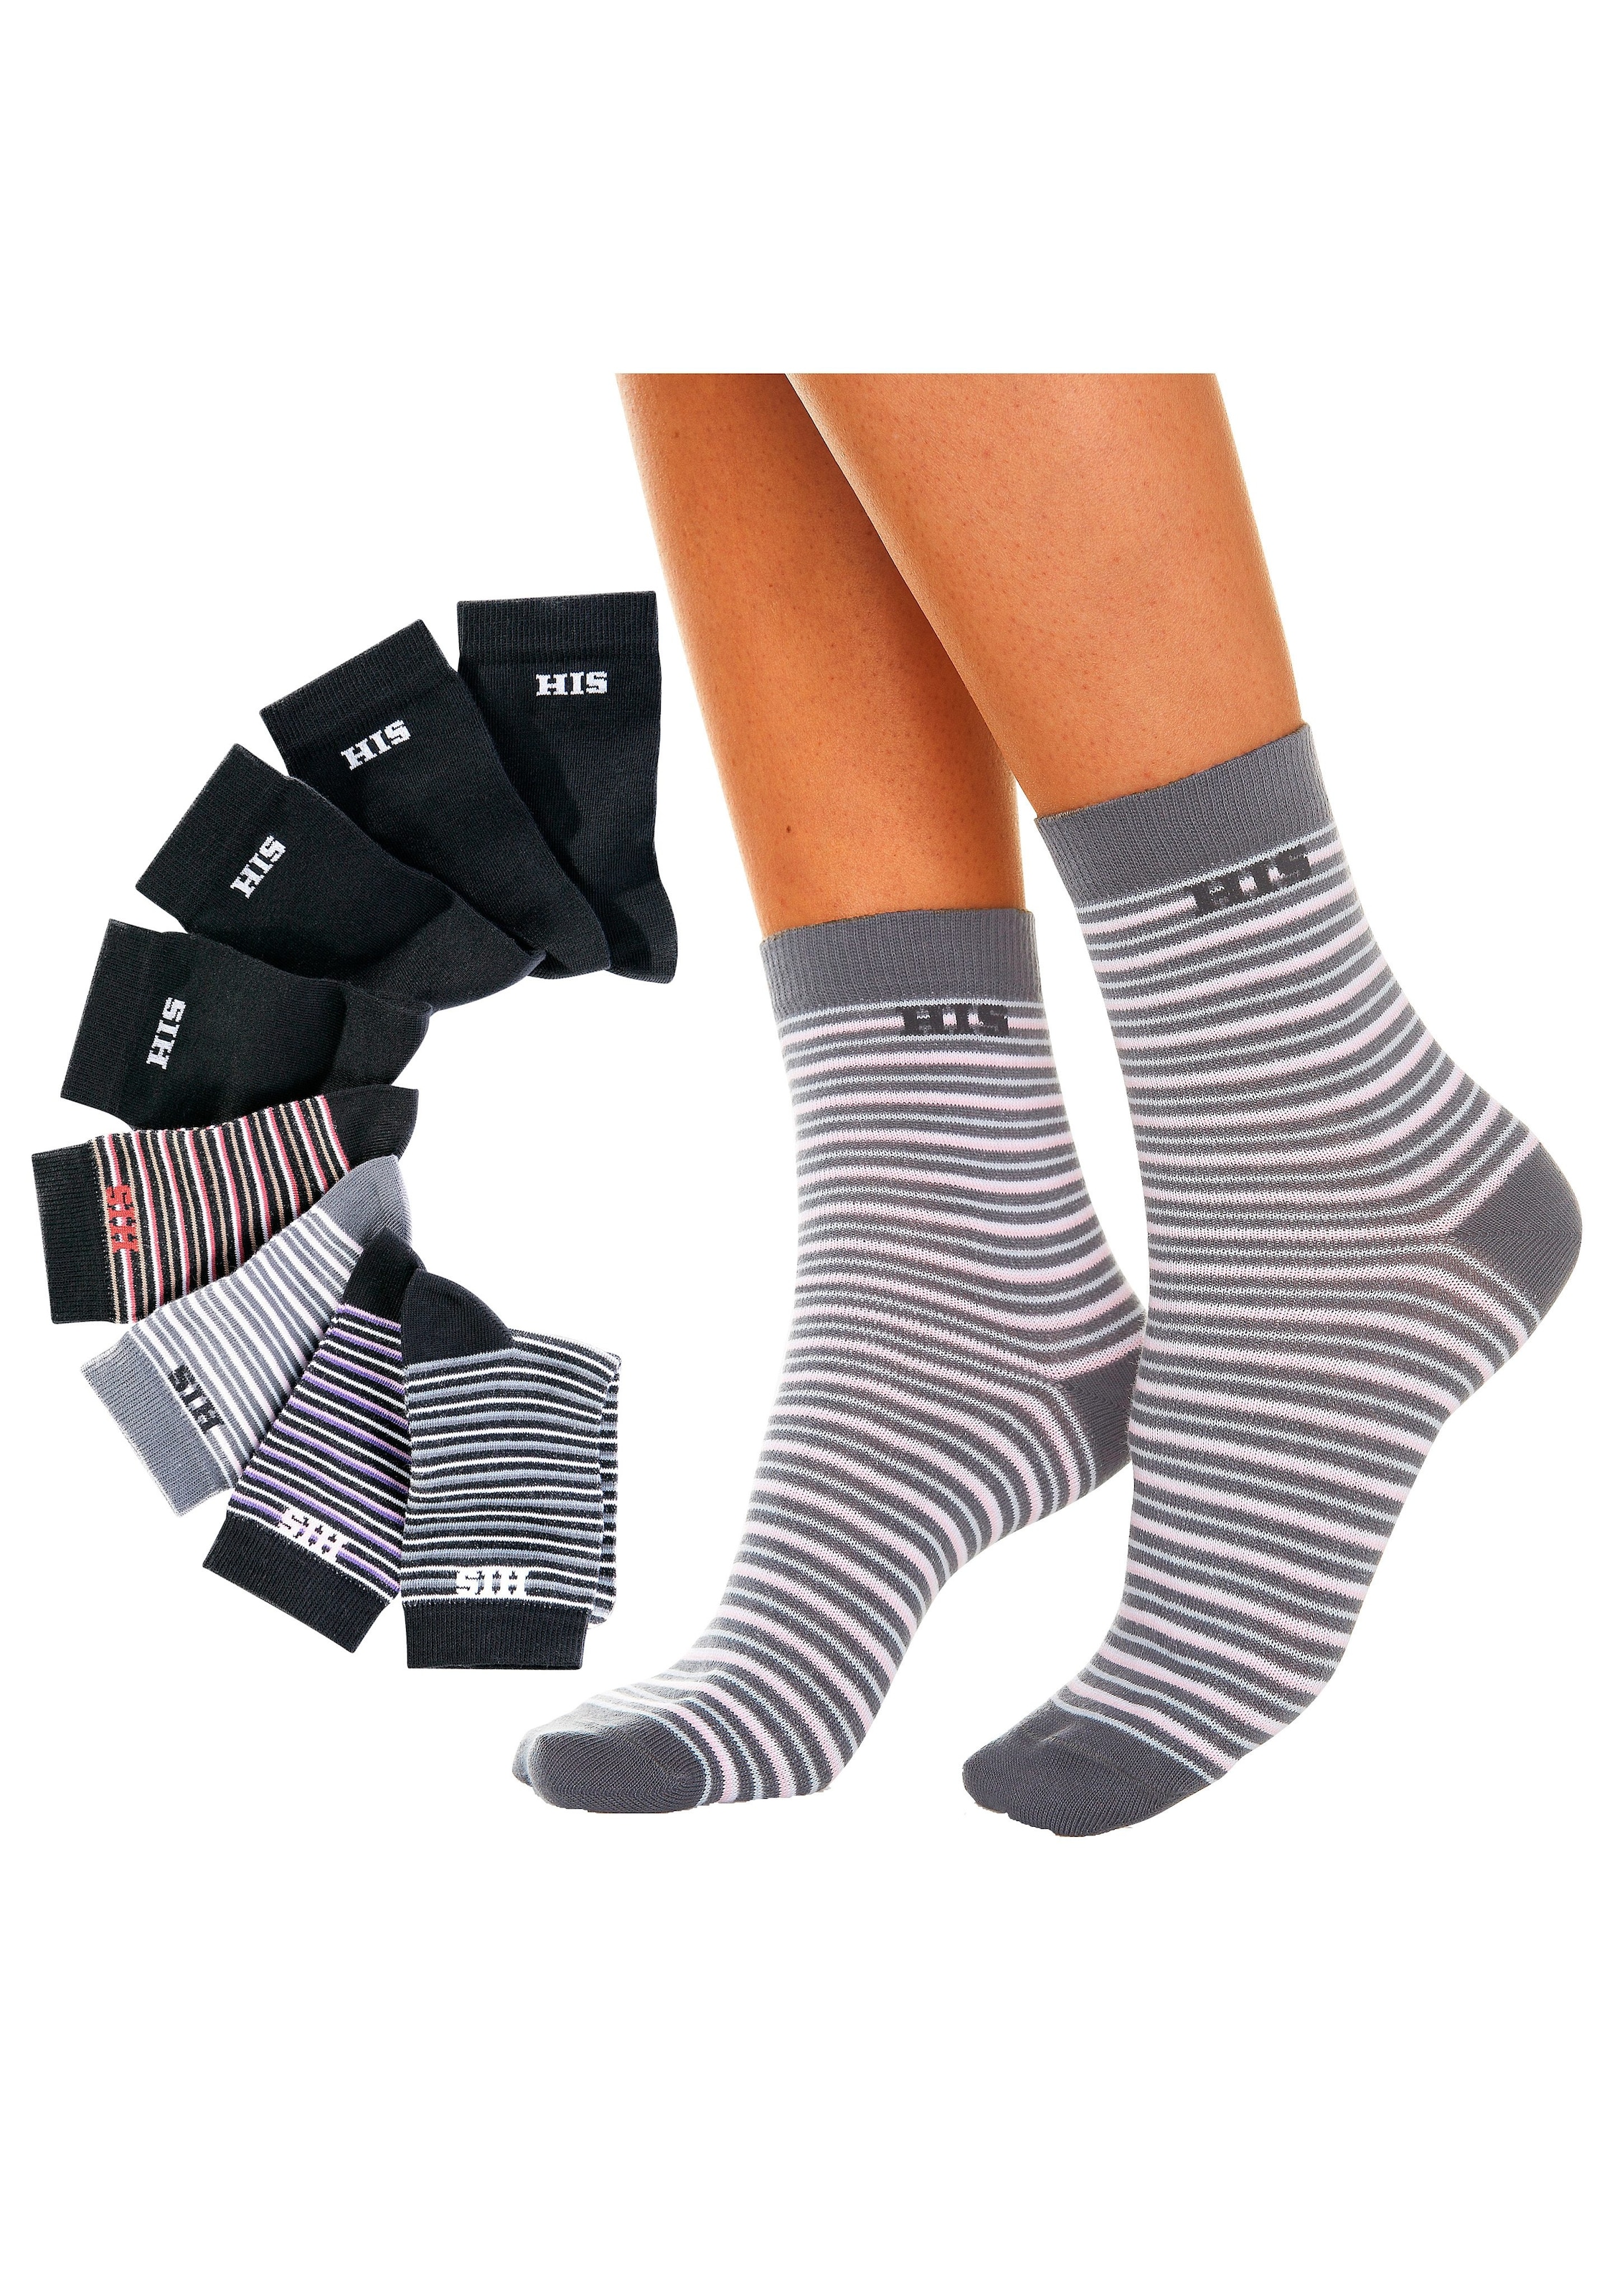 H.I.S Socken, (8 unifarben Paar), shoppen OTTO online geringelt und bei